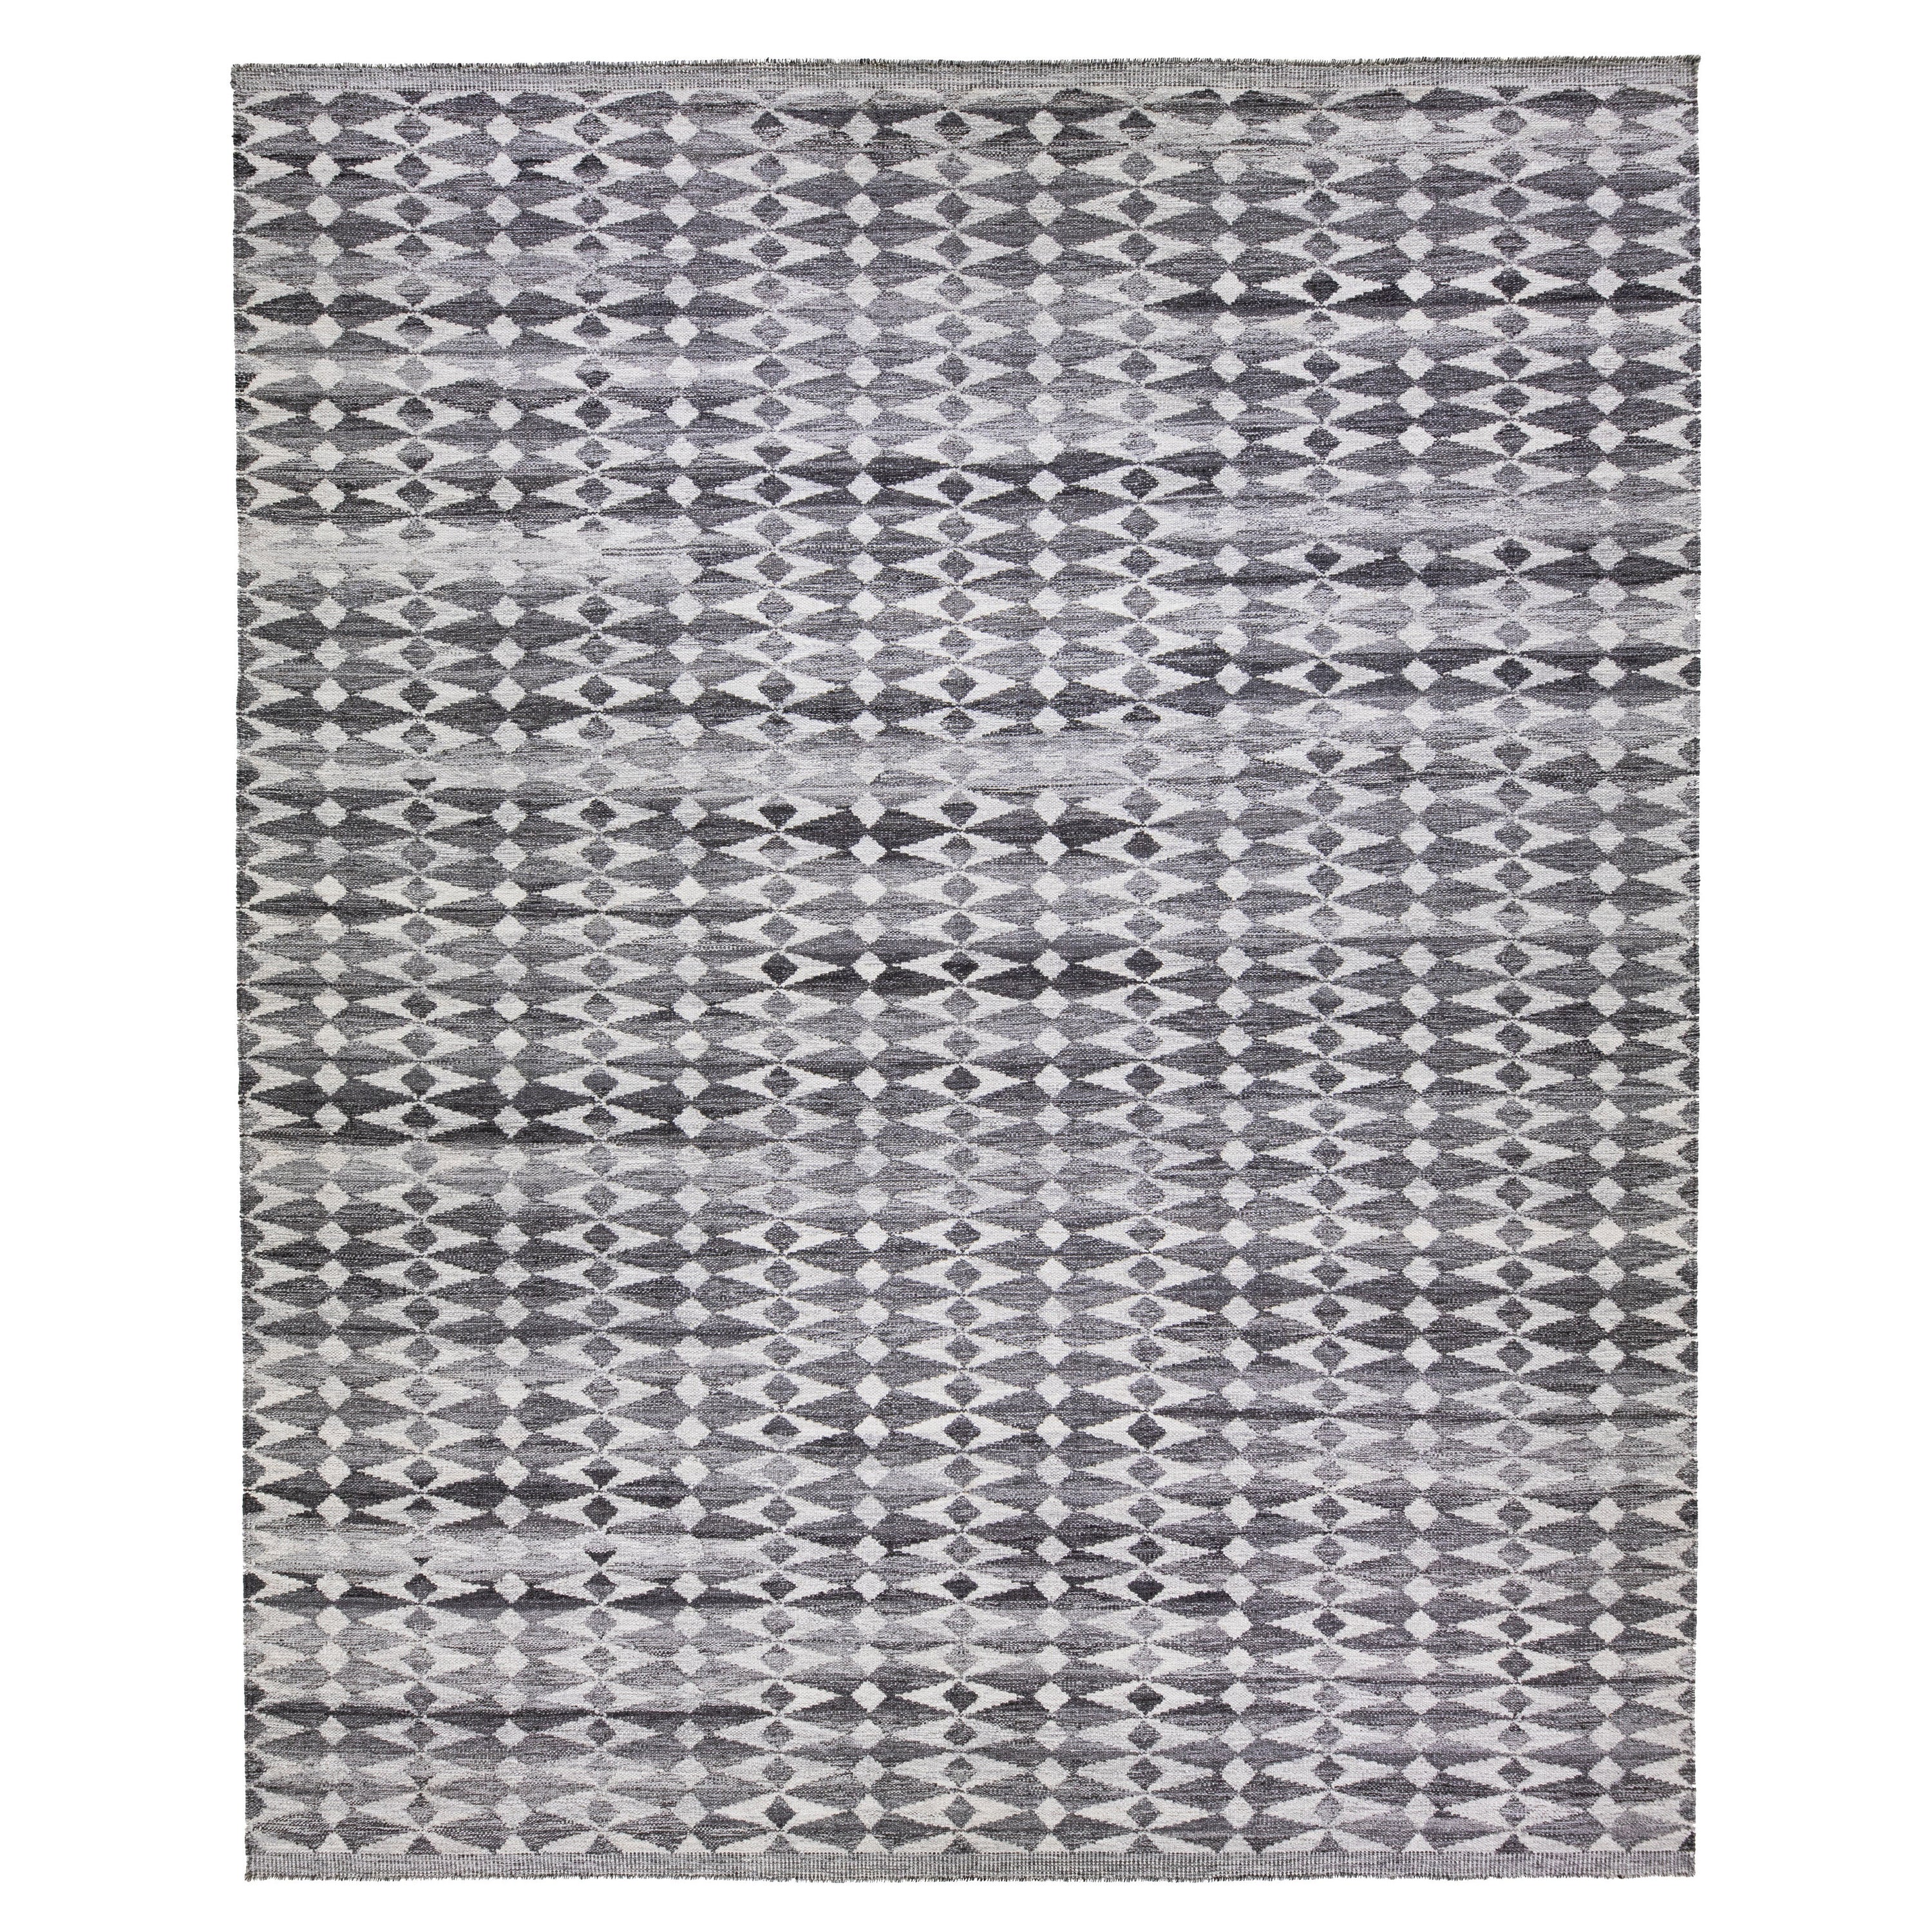 Tapis en laine grise de style suédois moderne et surdimensionné fait à la main avec motif géométrique